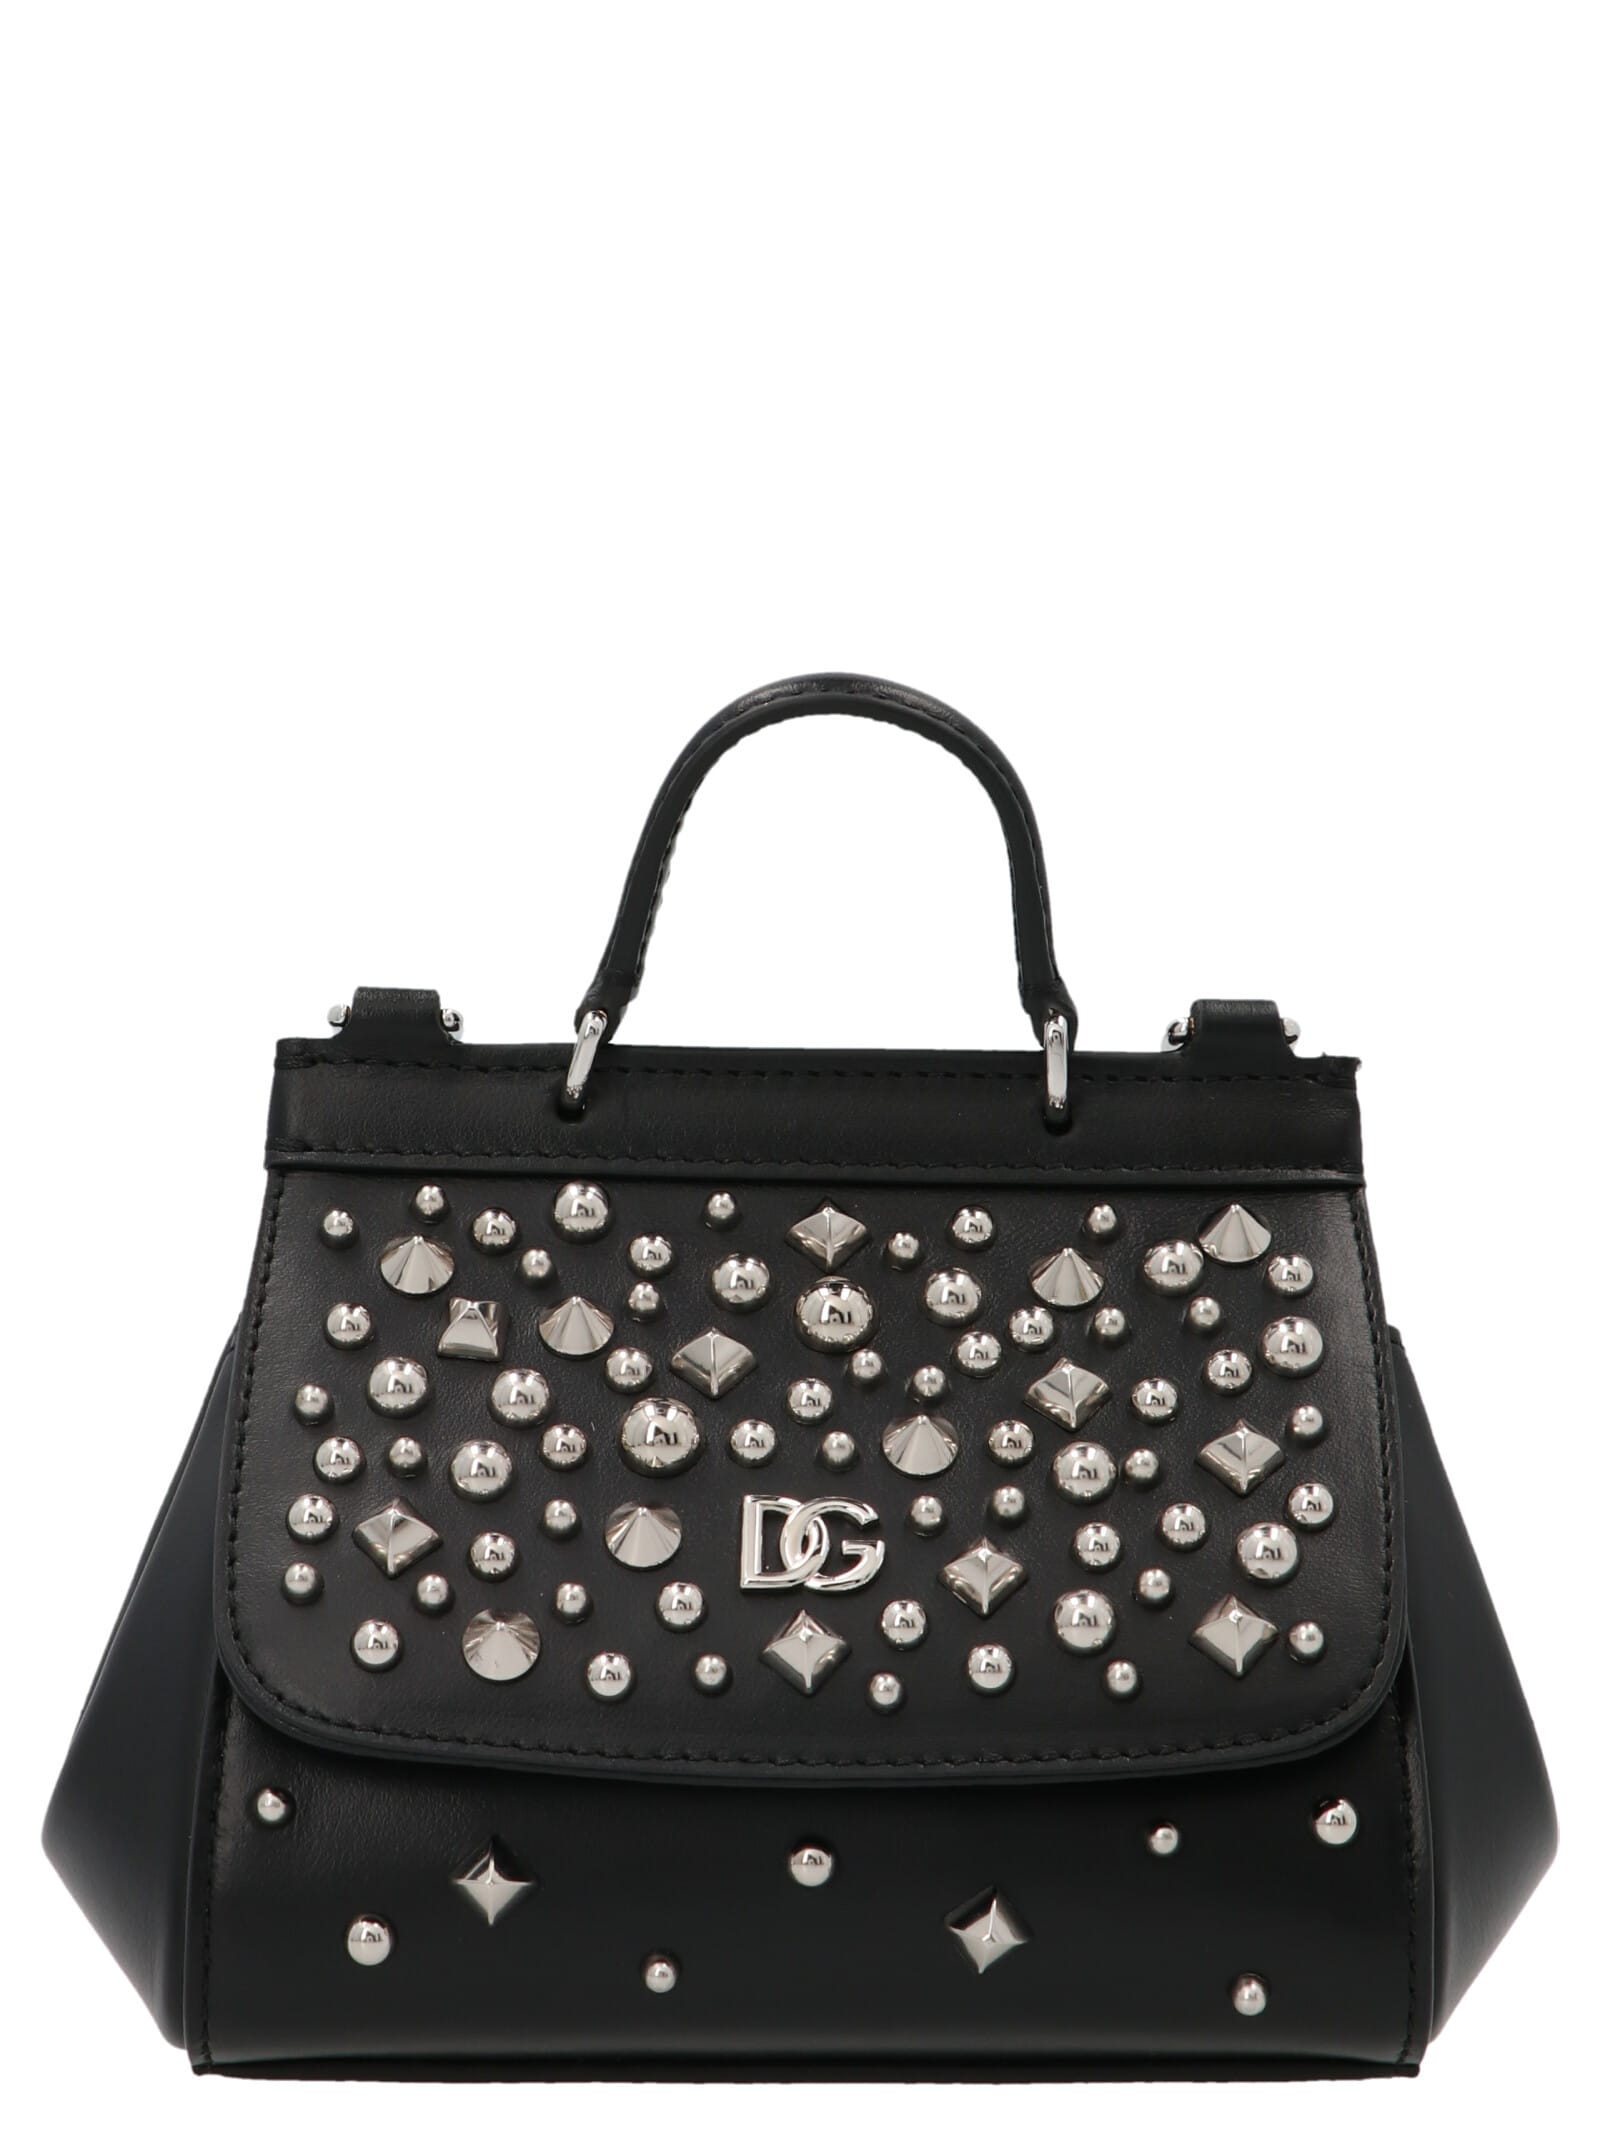 Dolce & Gabbana Logo Crossbody Bag